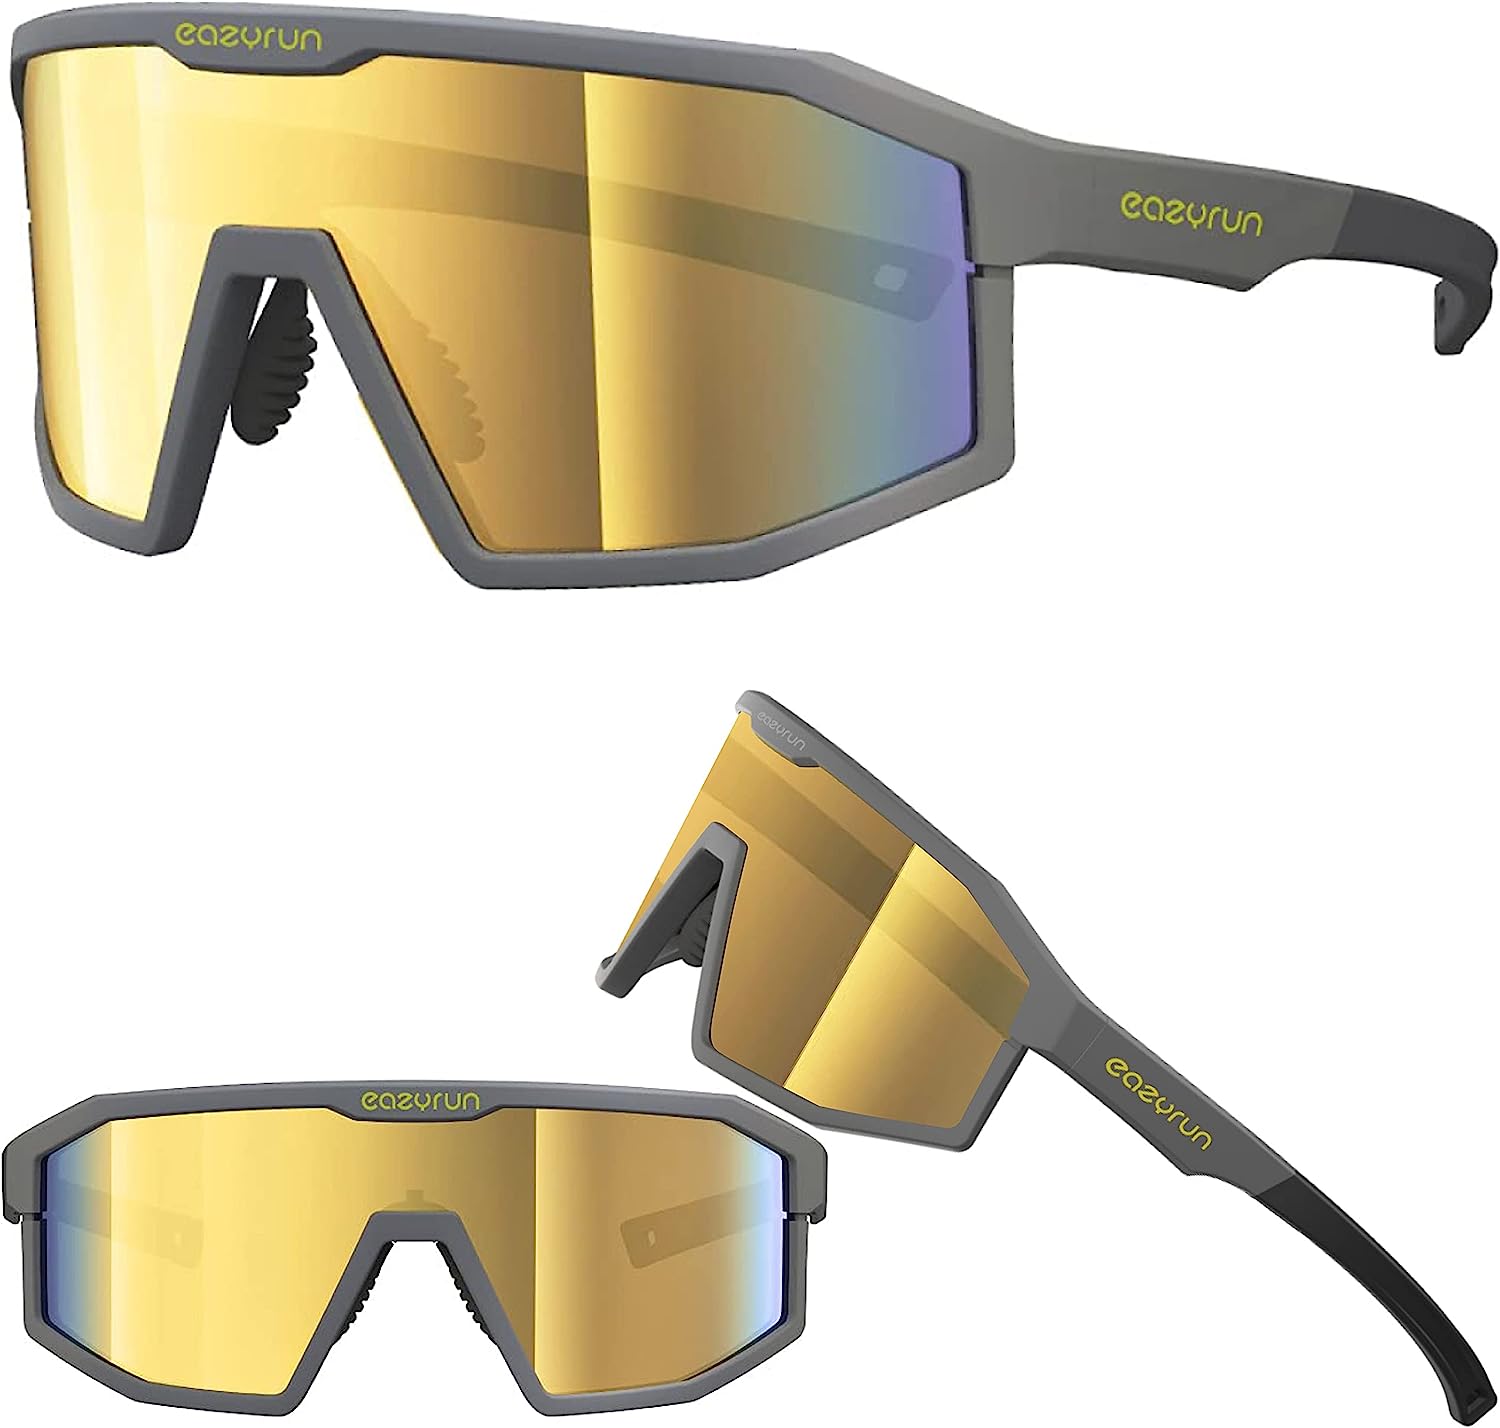 Pit Viper Sunglasses: Unleashing Bold Style